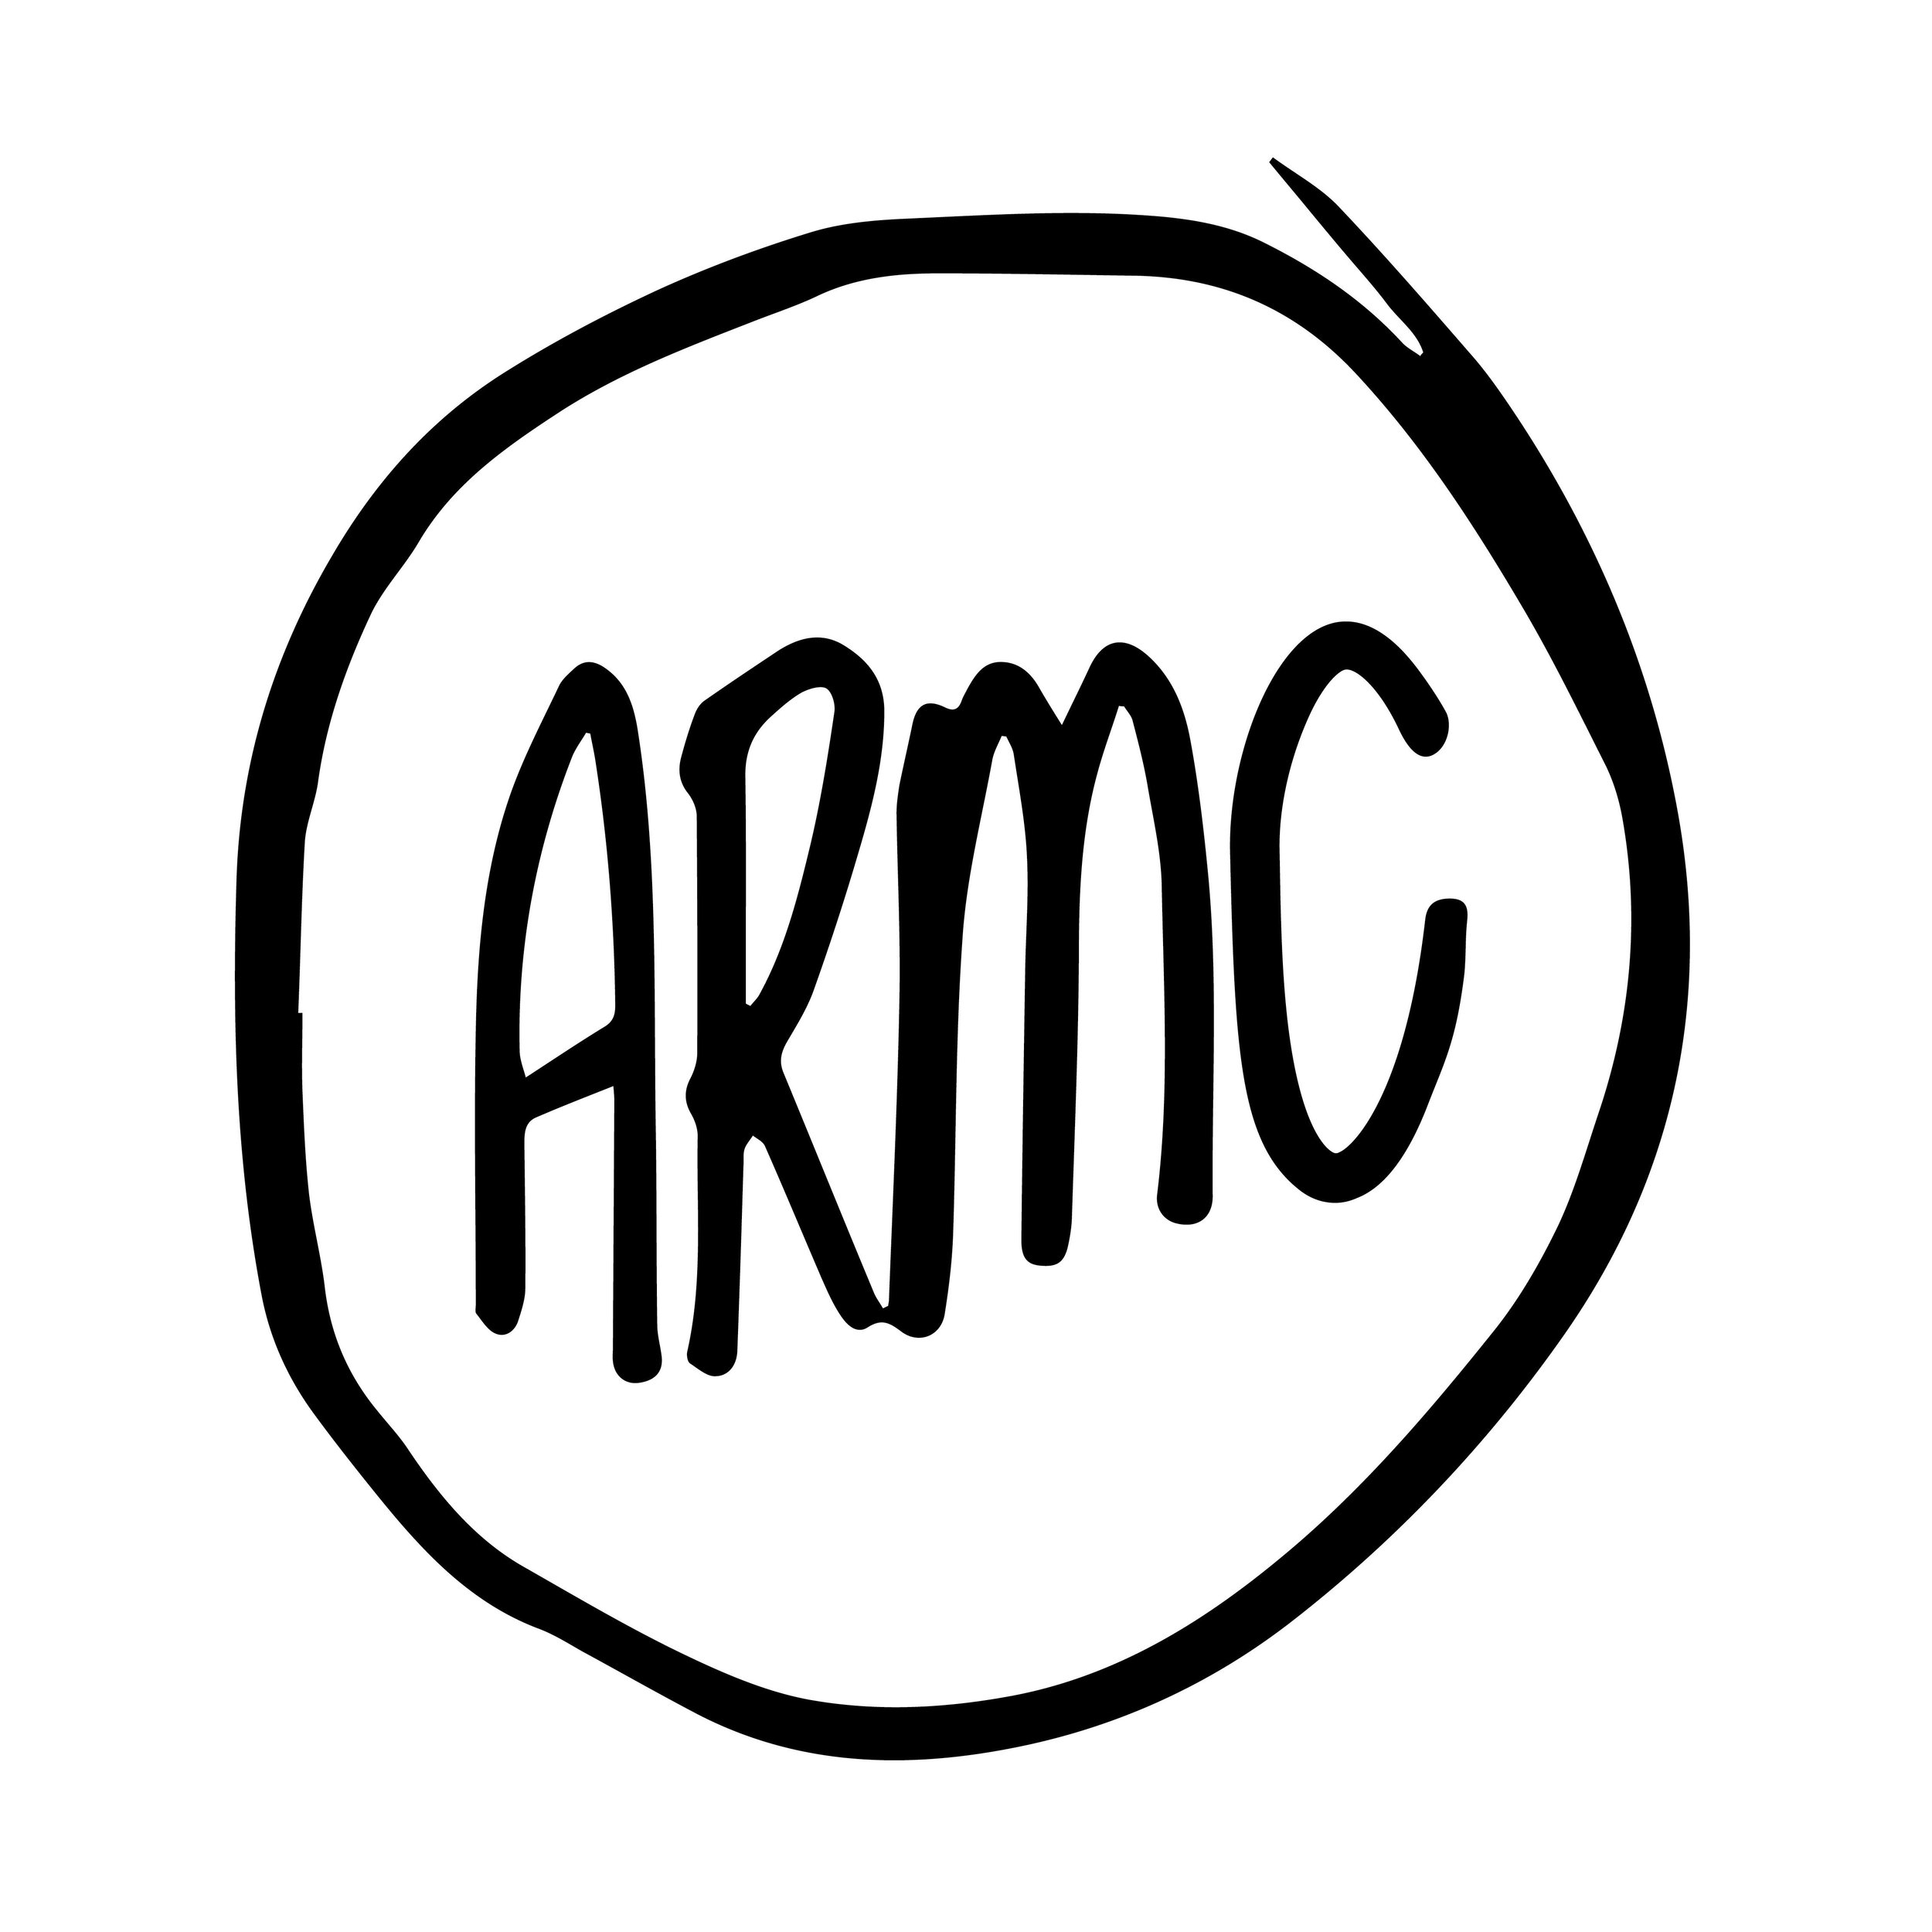 ARMC logo.jpeg